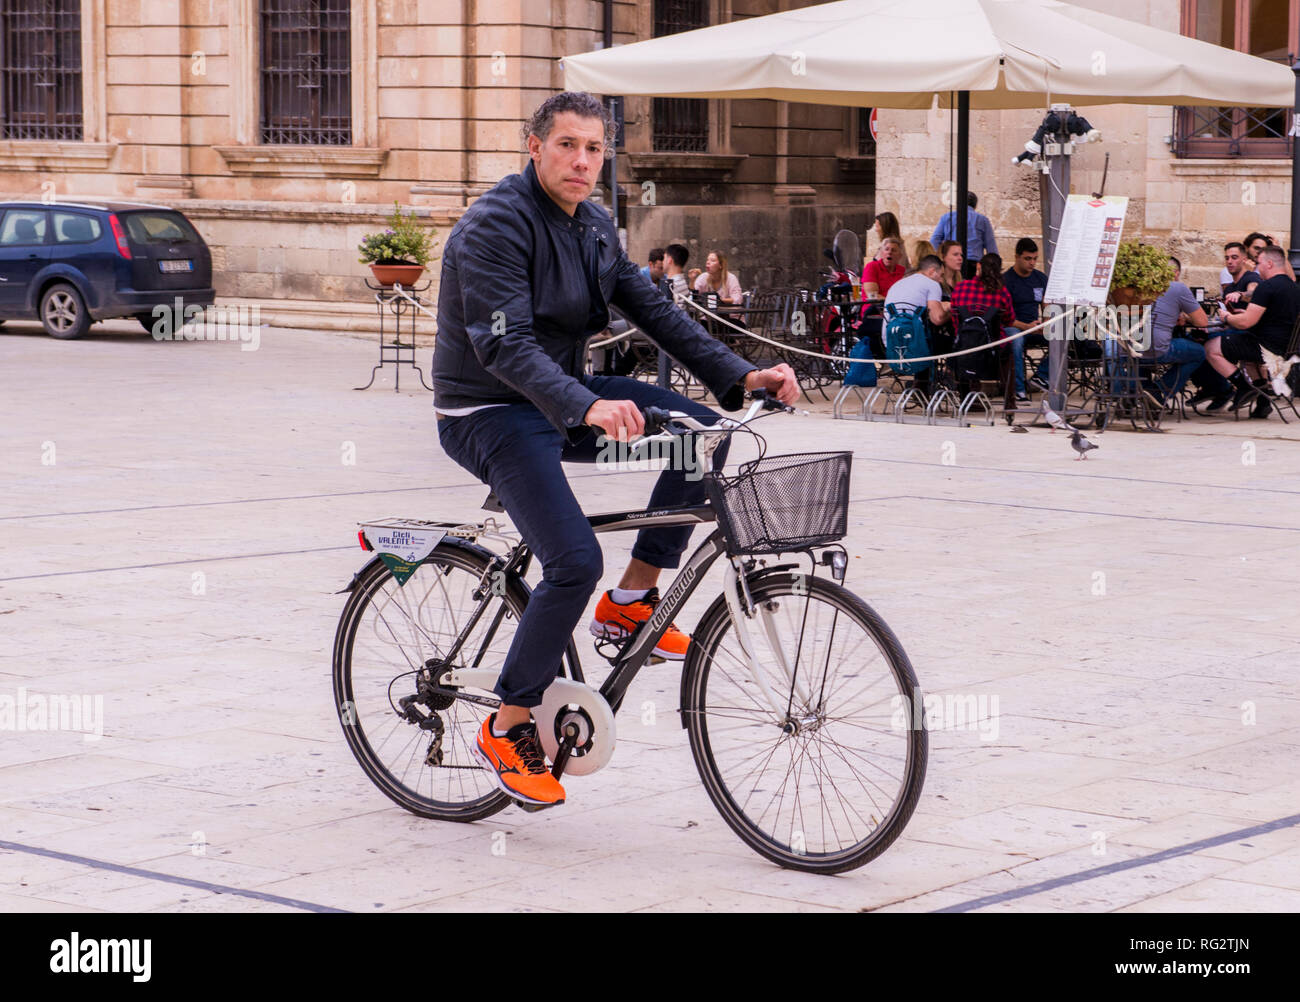 Porträt der Mann auf dem Fahrrad, Radfahren auf der Straße, Gruppe von Menschen draußen Cafe im Hintergrund, der Insel Ortygia, Syrakus, Sizilien, Italien, Europa Stockfoto